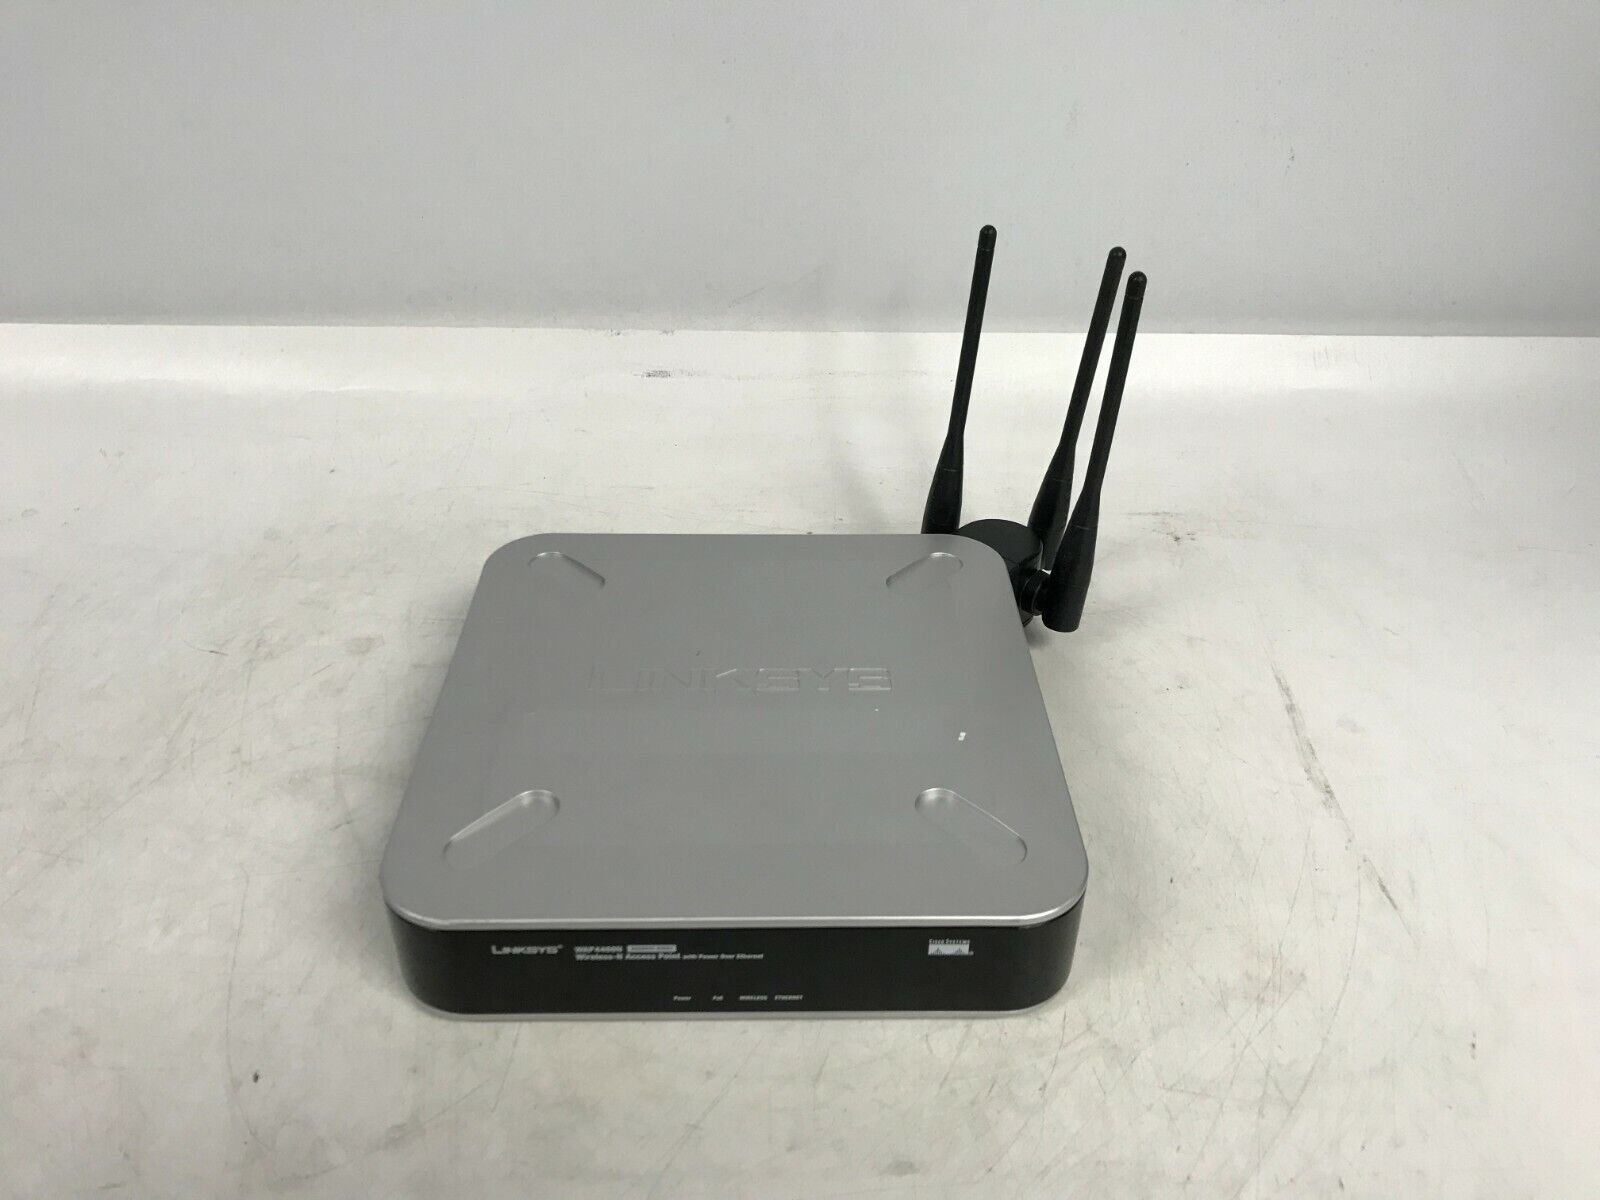  1-LINKSYS(WAP4400N) Wireless Router